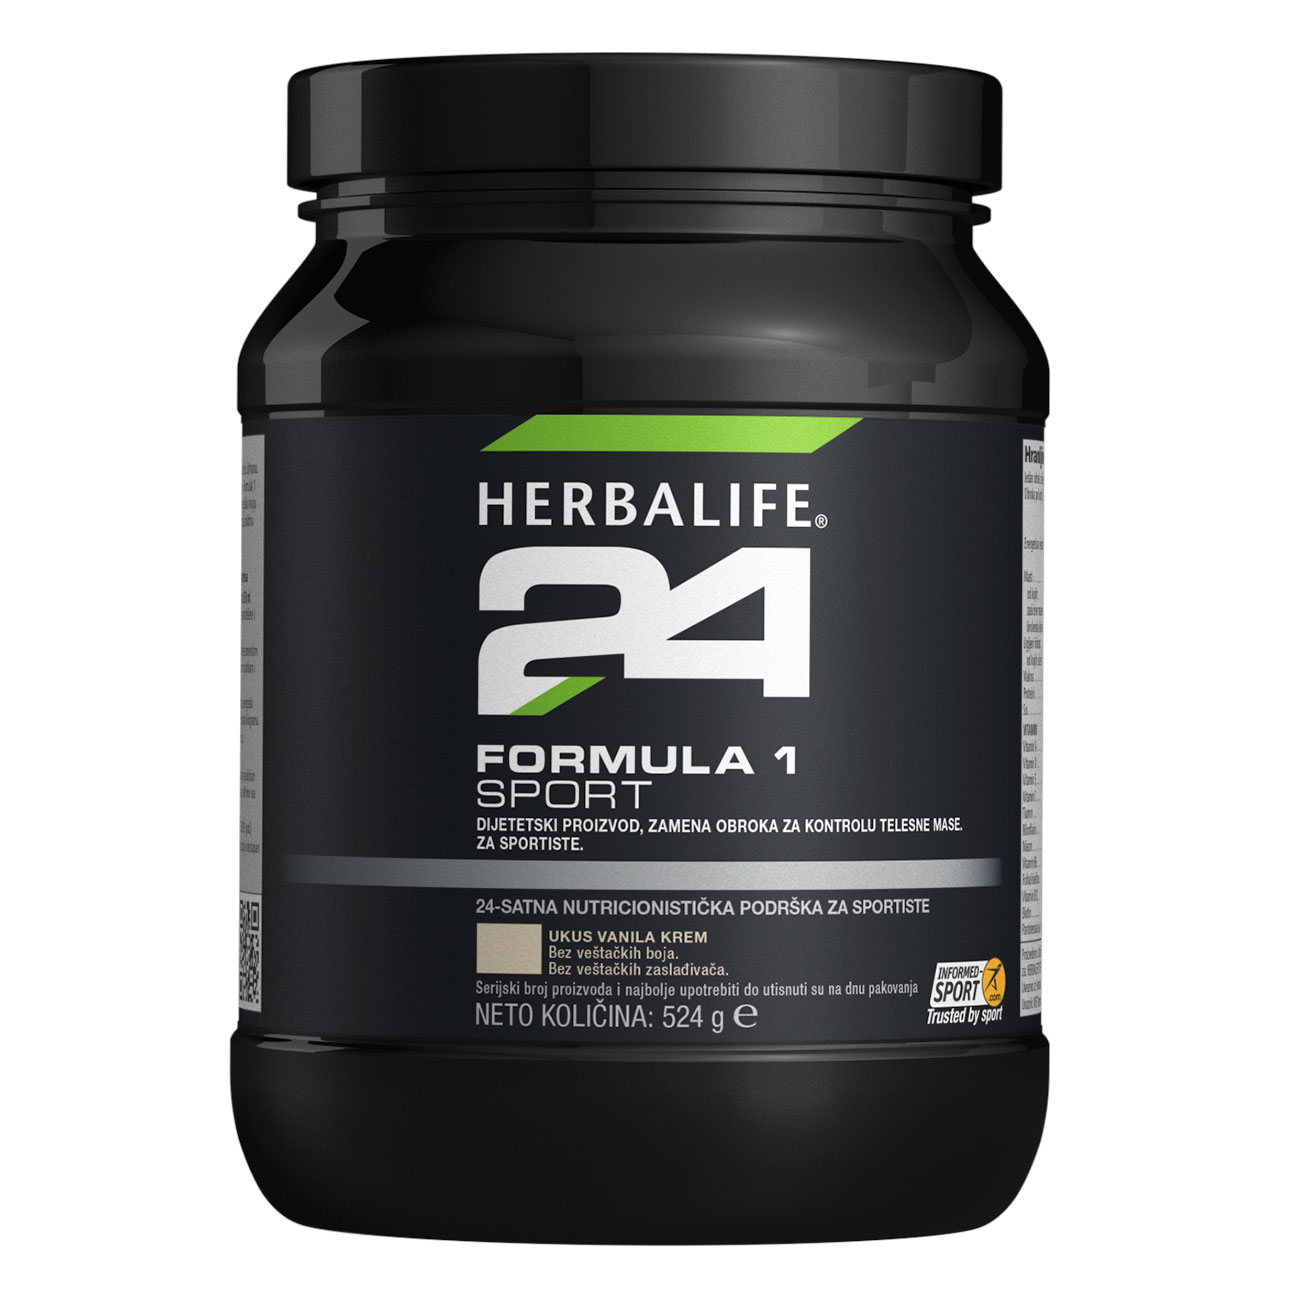 Herbalife24® Formula 1 Sport Dijetetski proizvod, zamena obroka za kontrolu telesne mase i sportsku ishranu u prahu ukus Vanilla Crème slika proizvoda